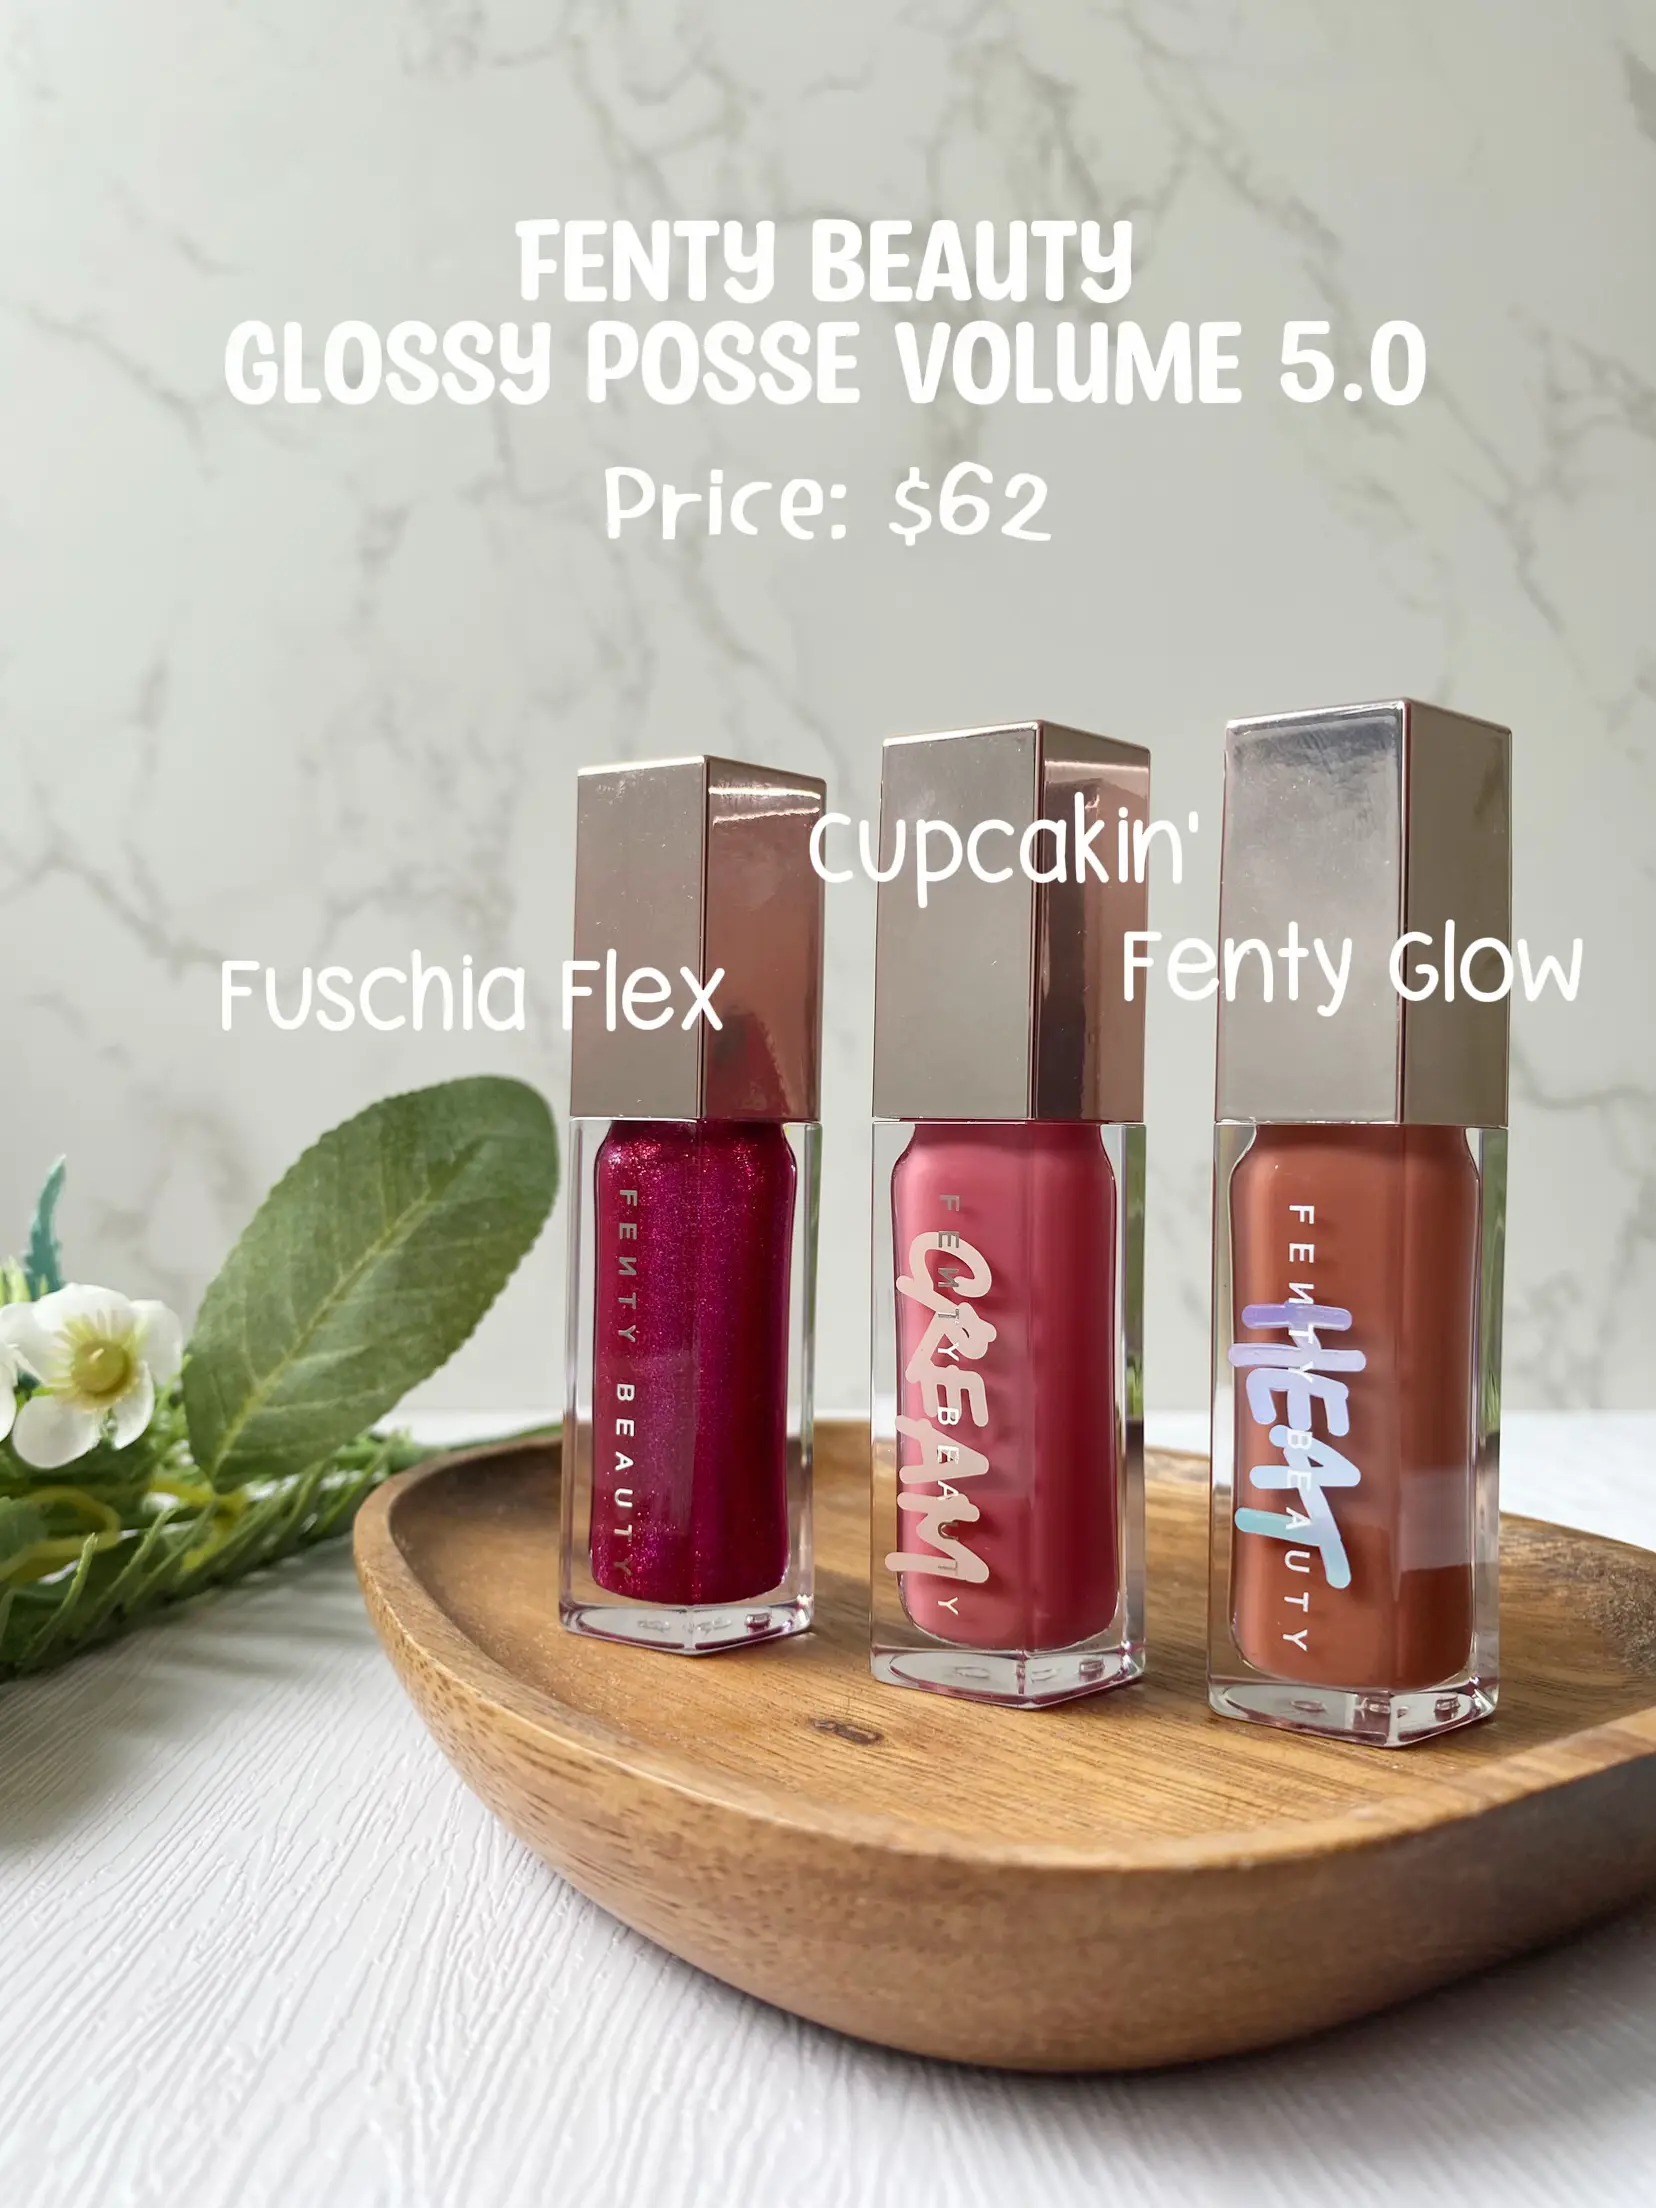 Fenty Beauty Glossy Posse Volume 5.0